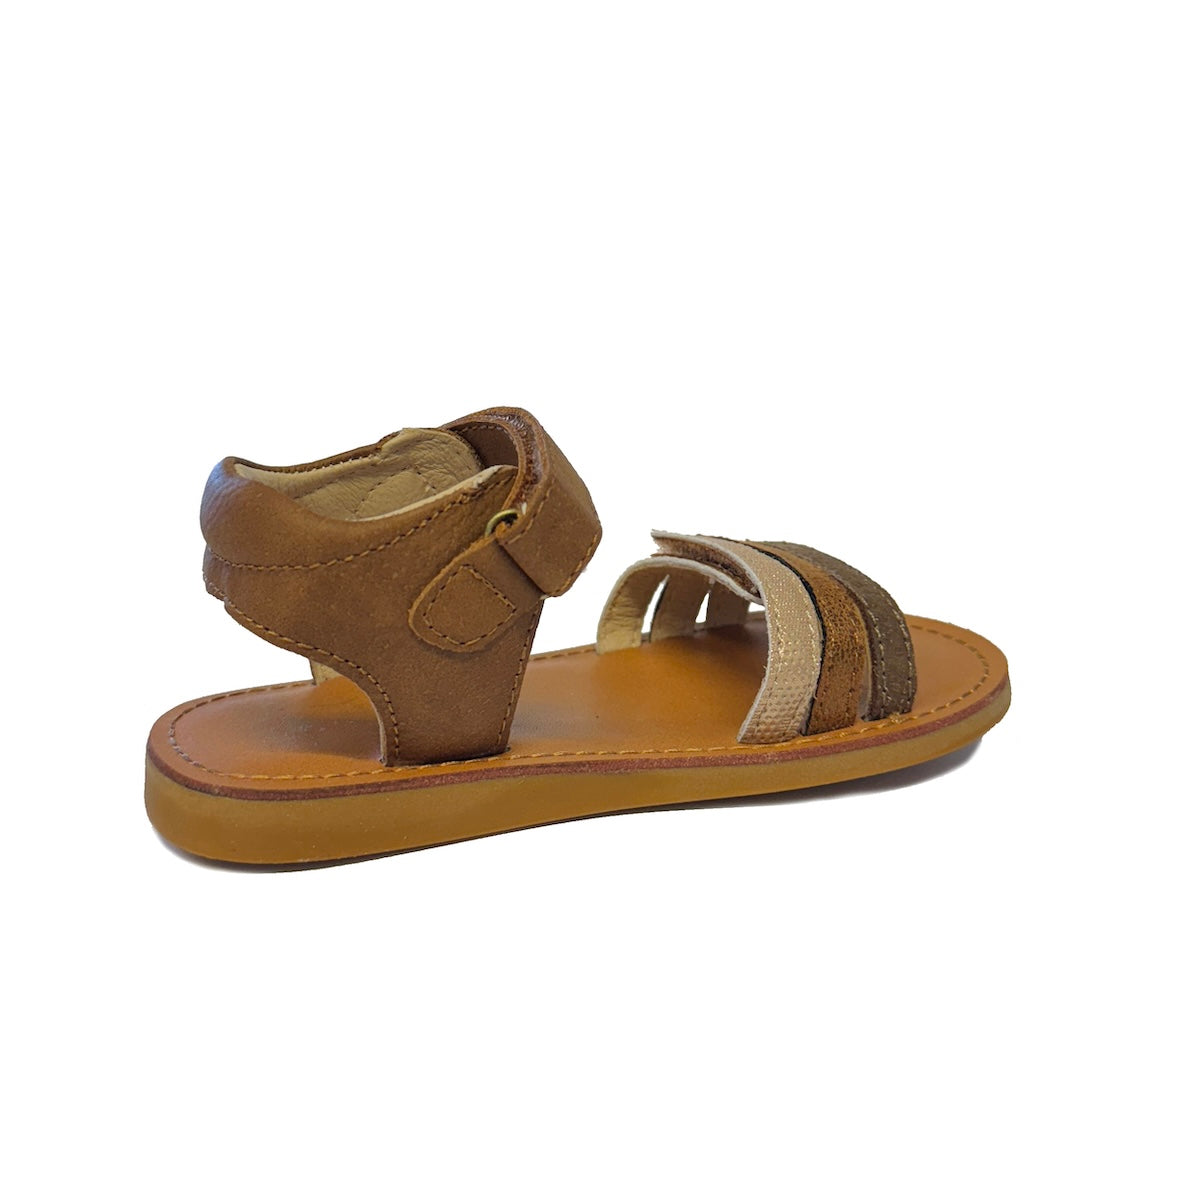 De Shoesme classic sandaal brown is de perfecte sandaal voor jouw kleintje. Deze comfortabele sandalen zijn heerlijk om te dragen op een warme zomerdag. De leuke looks van de sandalen maken het helemaal af. VanZus.